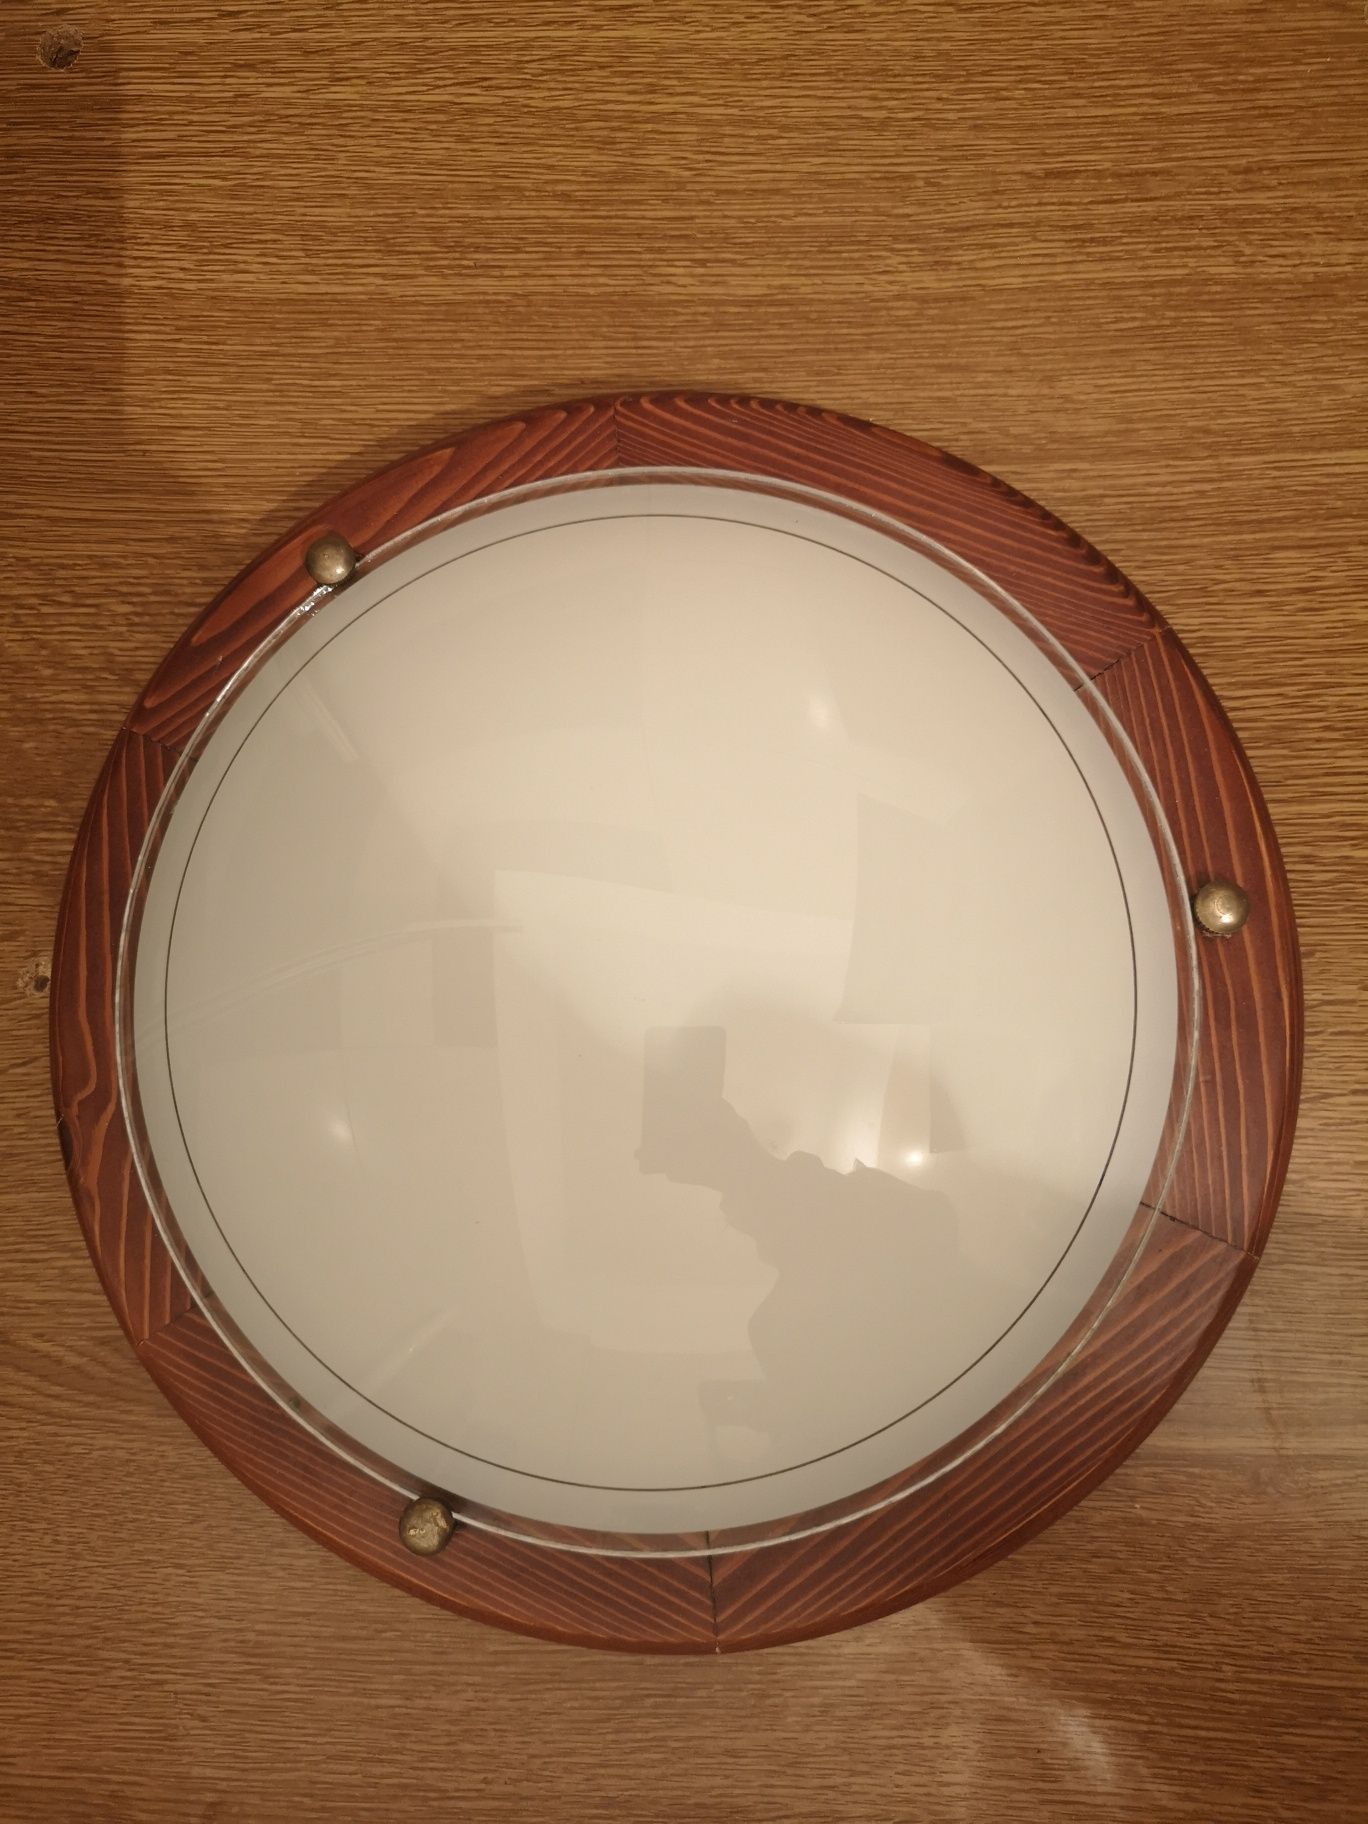 Plafoniere: Murano, lemn și sticla, rezerva de sticla diametru 30 cm